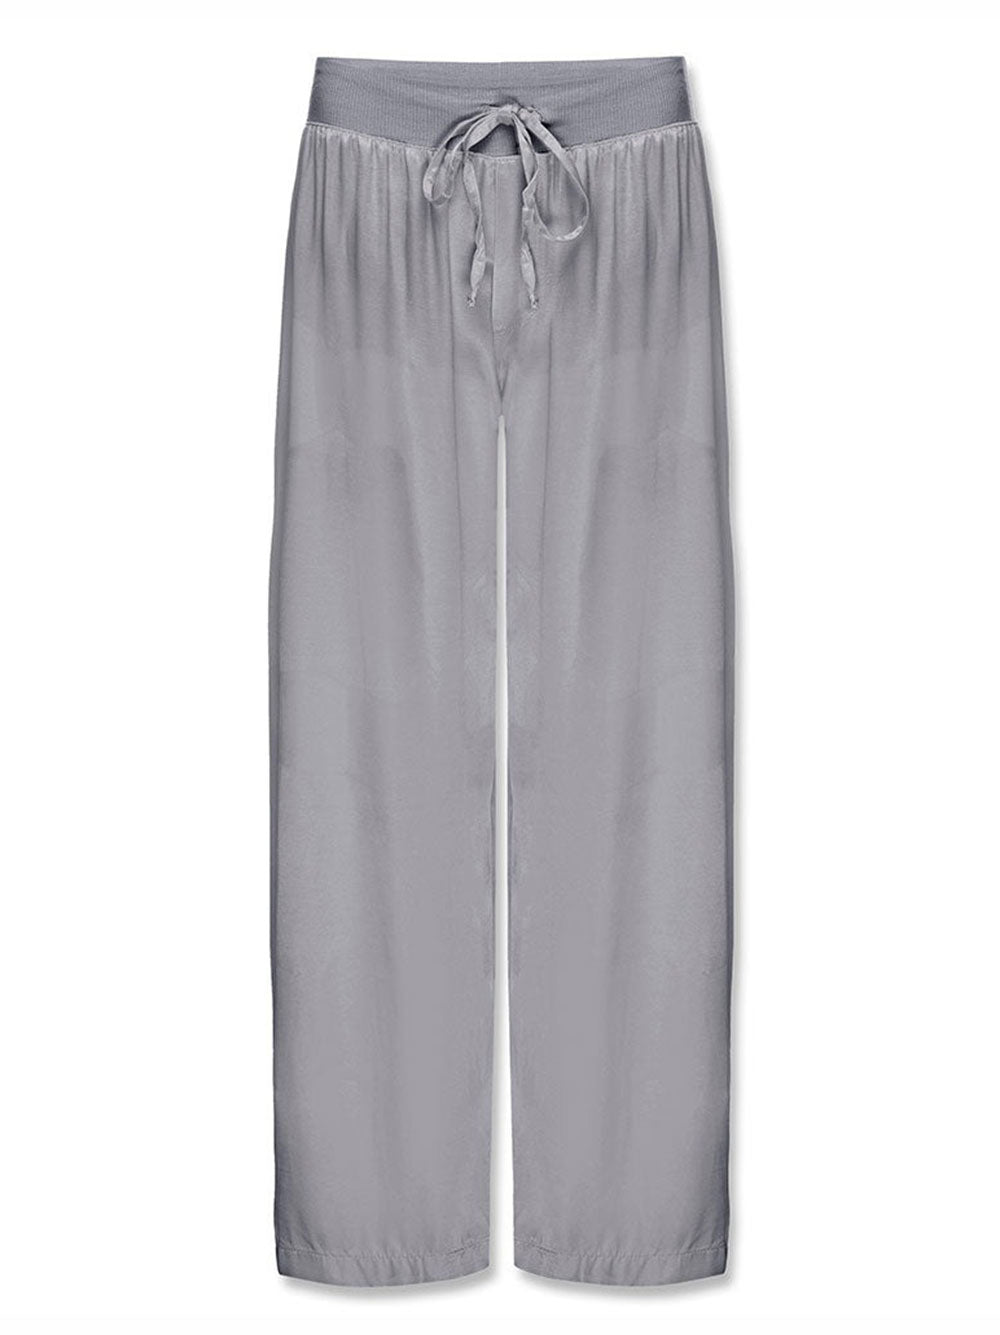 PJ Harlow Jolie Capri Pajama Pants (More Colors)